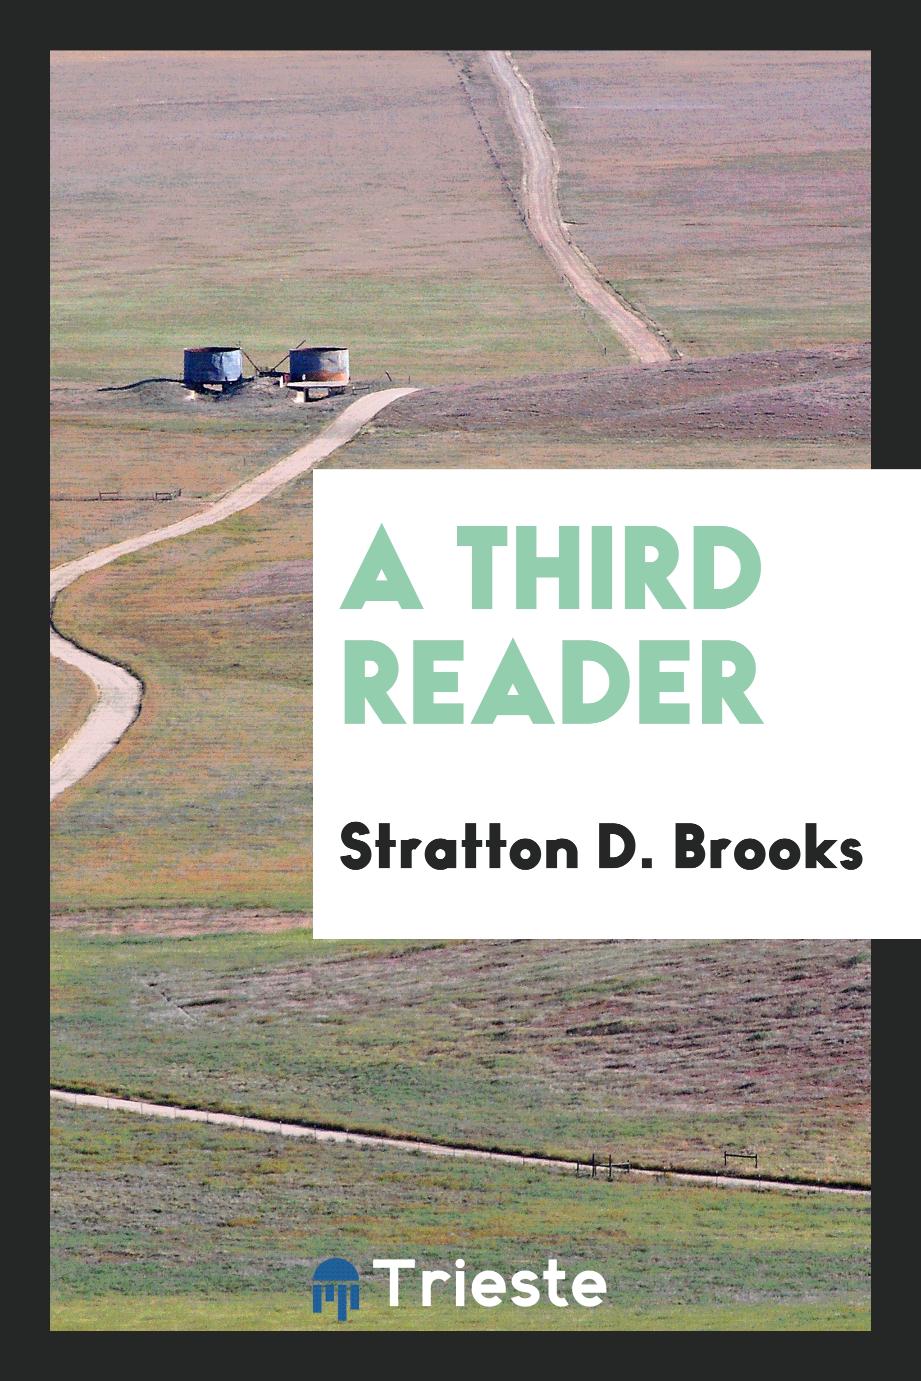 A third reader